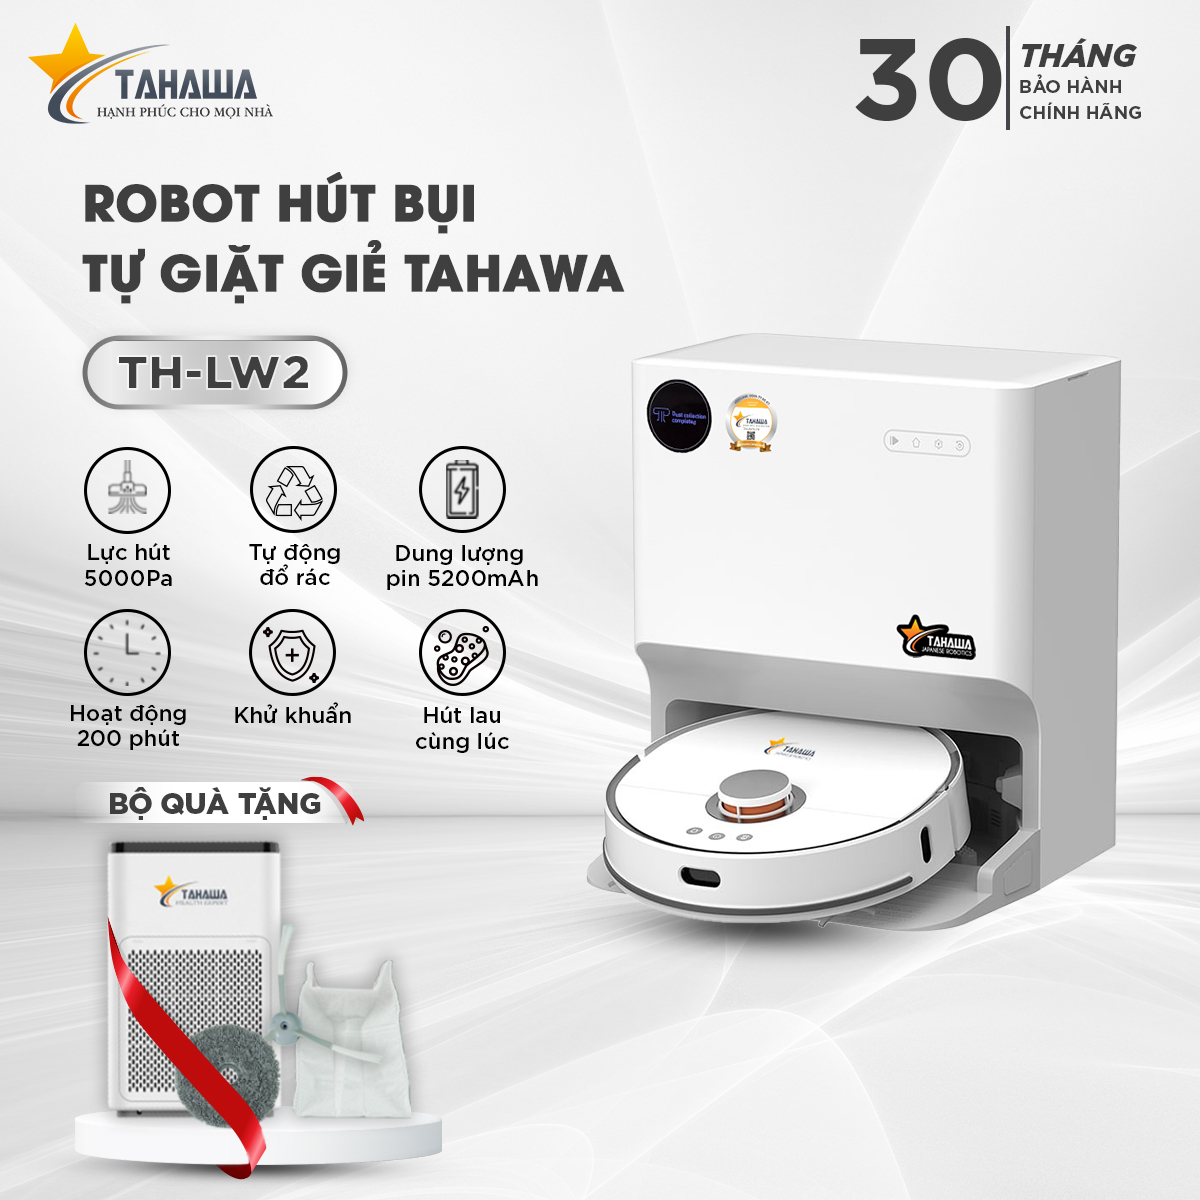 Robot hút bụi TAHAWA TH-LW2  Robo hút bụi an toàn cho sức khỏe người tiêu dùng, khử mùi hiệu quả sử dụng màn lọc HEPA 14, lọc sạch đến 99% bụi mịn